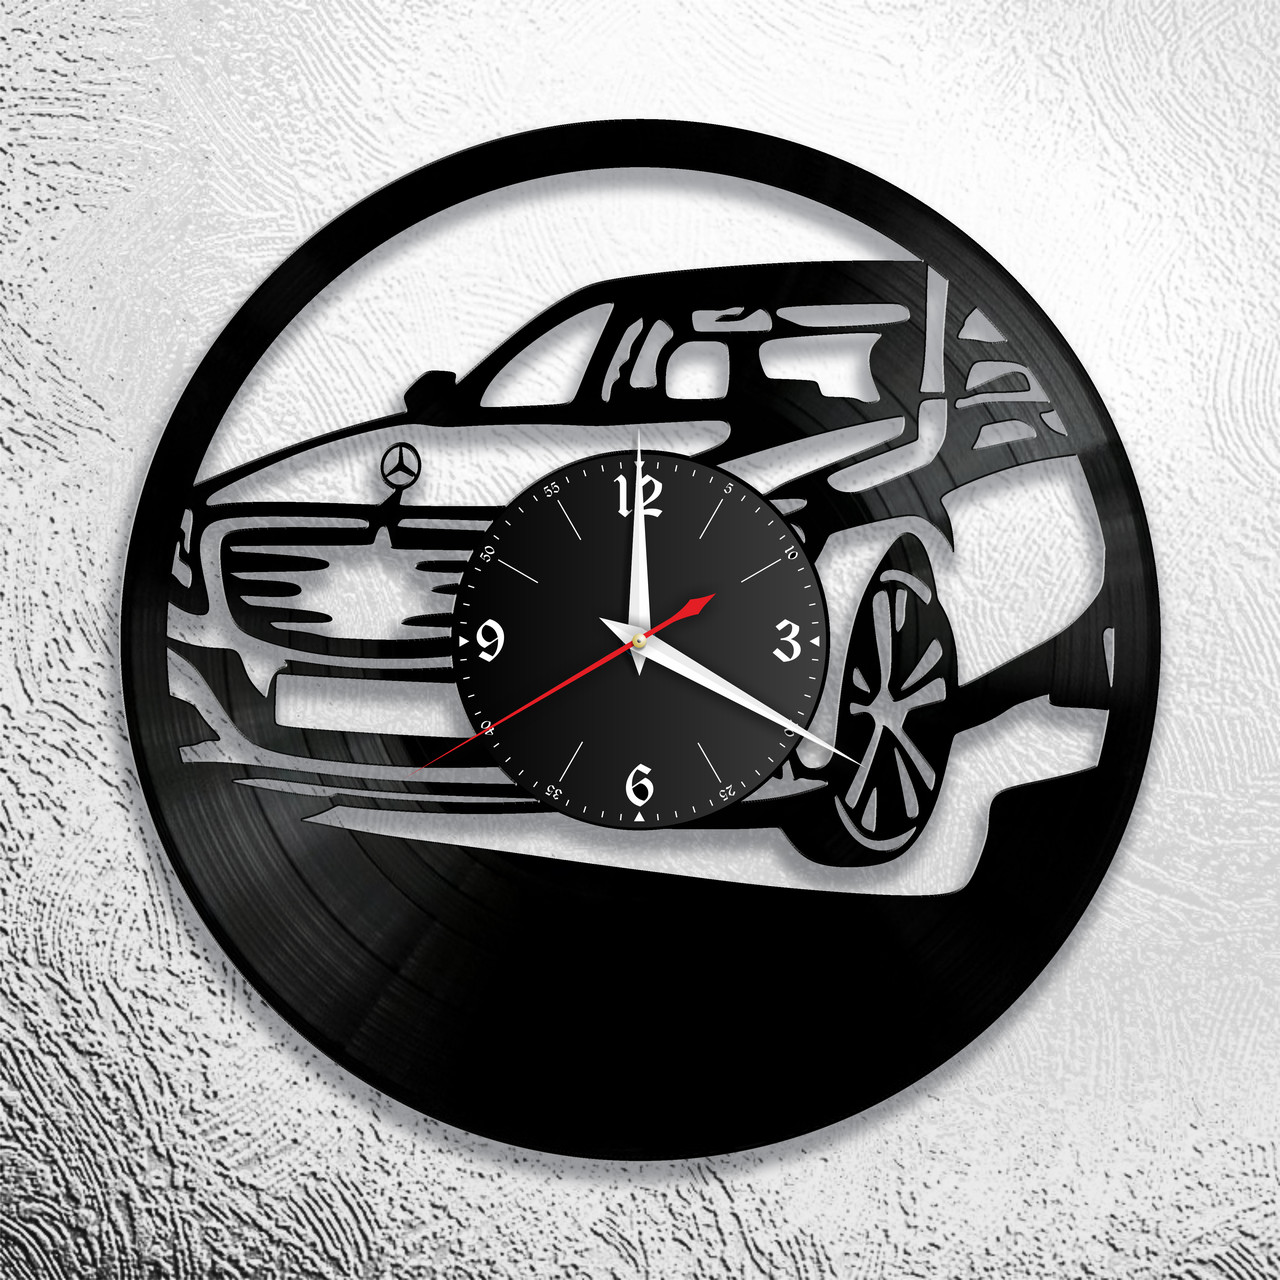 Оригинальные часы из виниловых пластинок  "Mercedes " версия 2, фото 1